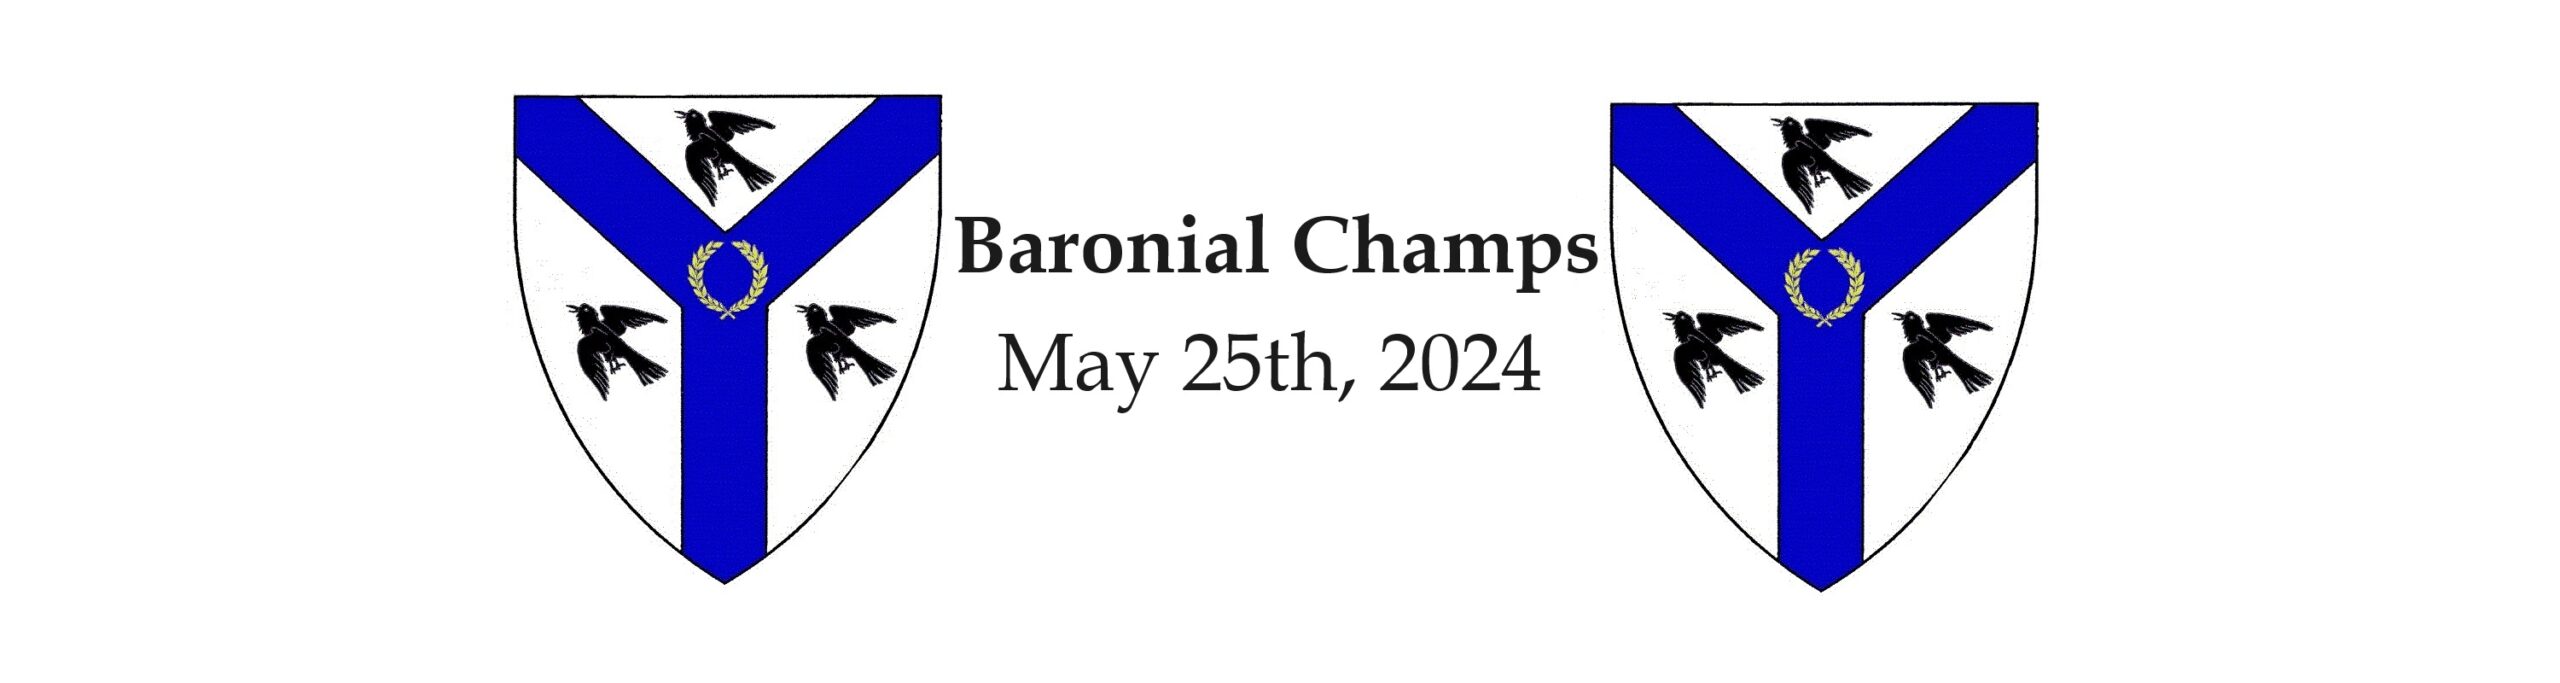 Baronial Champs 2024